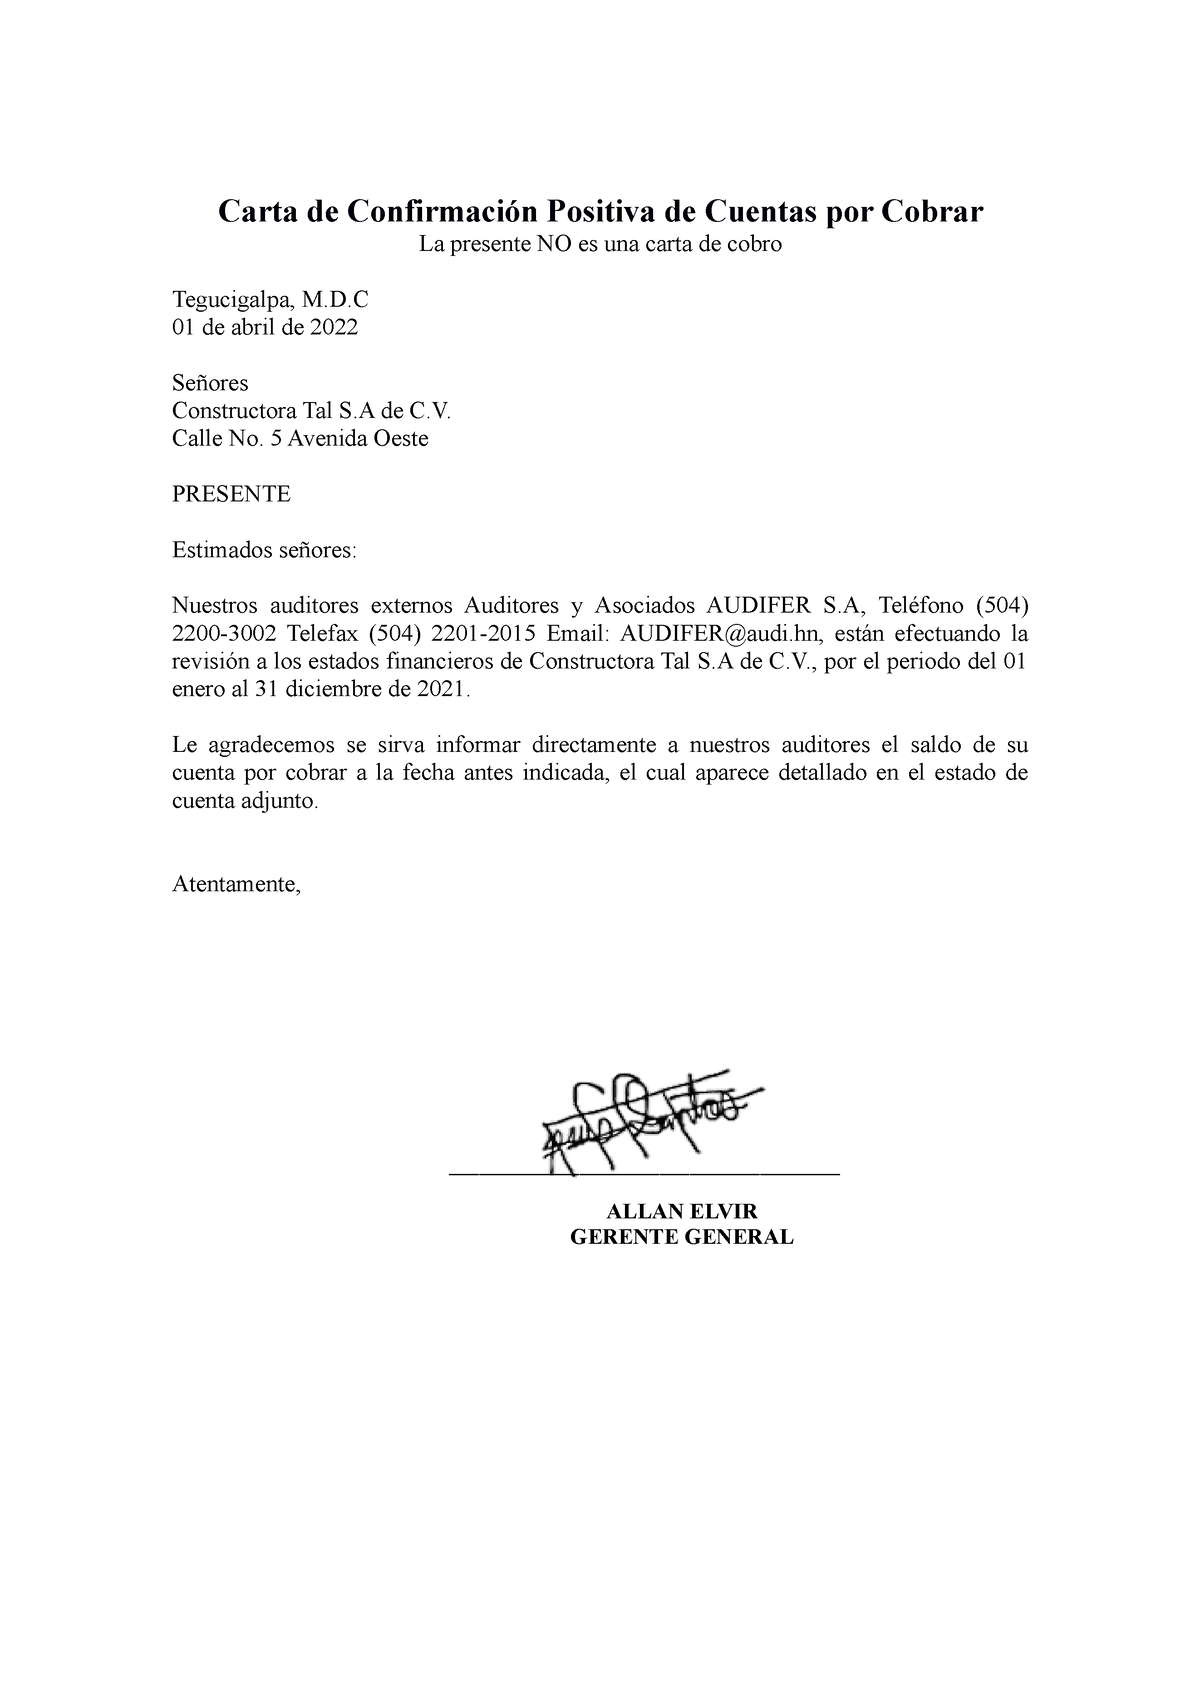 Carta confirmatoria de cuentas por cobrar - Carta de Confirmación Positiva  de Cuentas por Cobrar La - Studocu